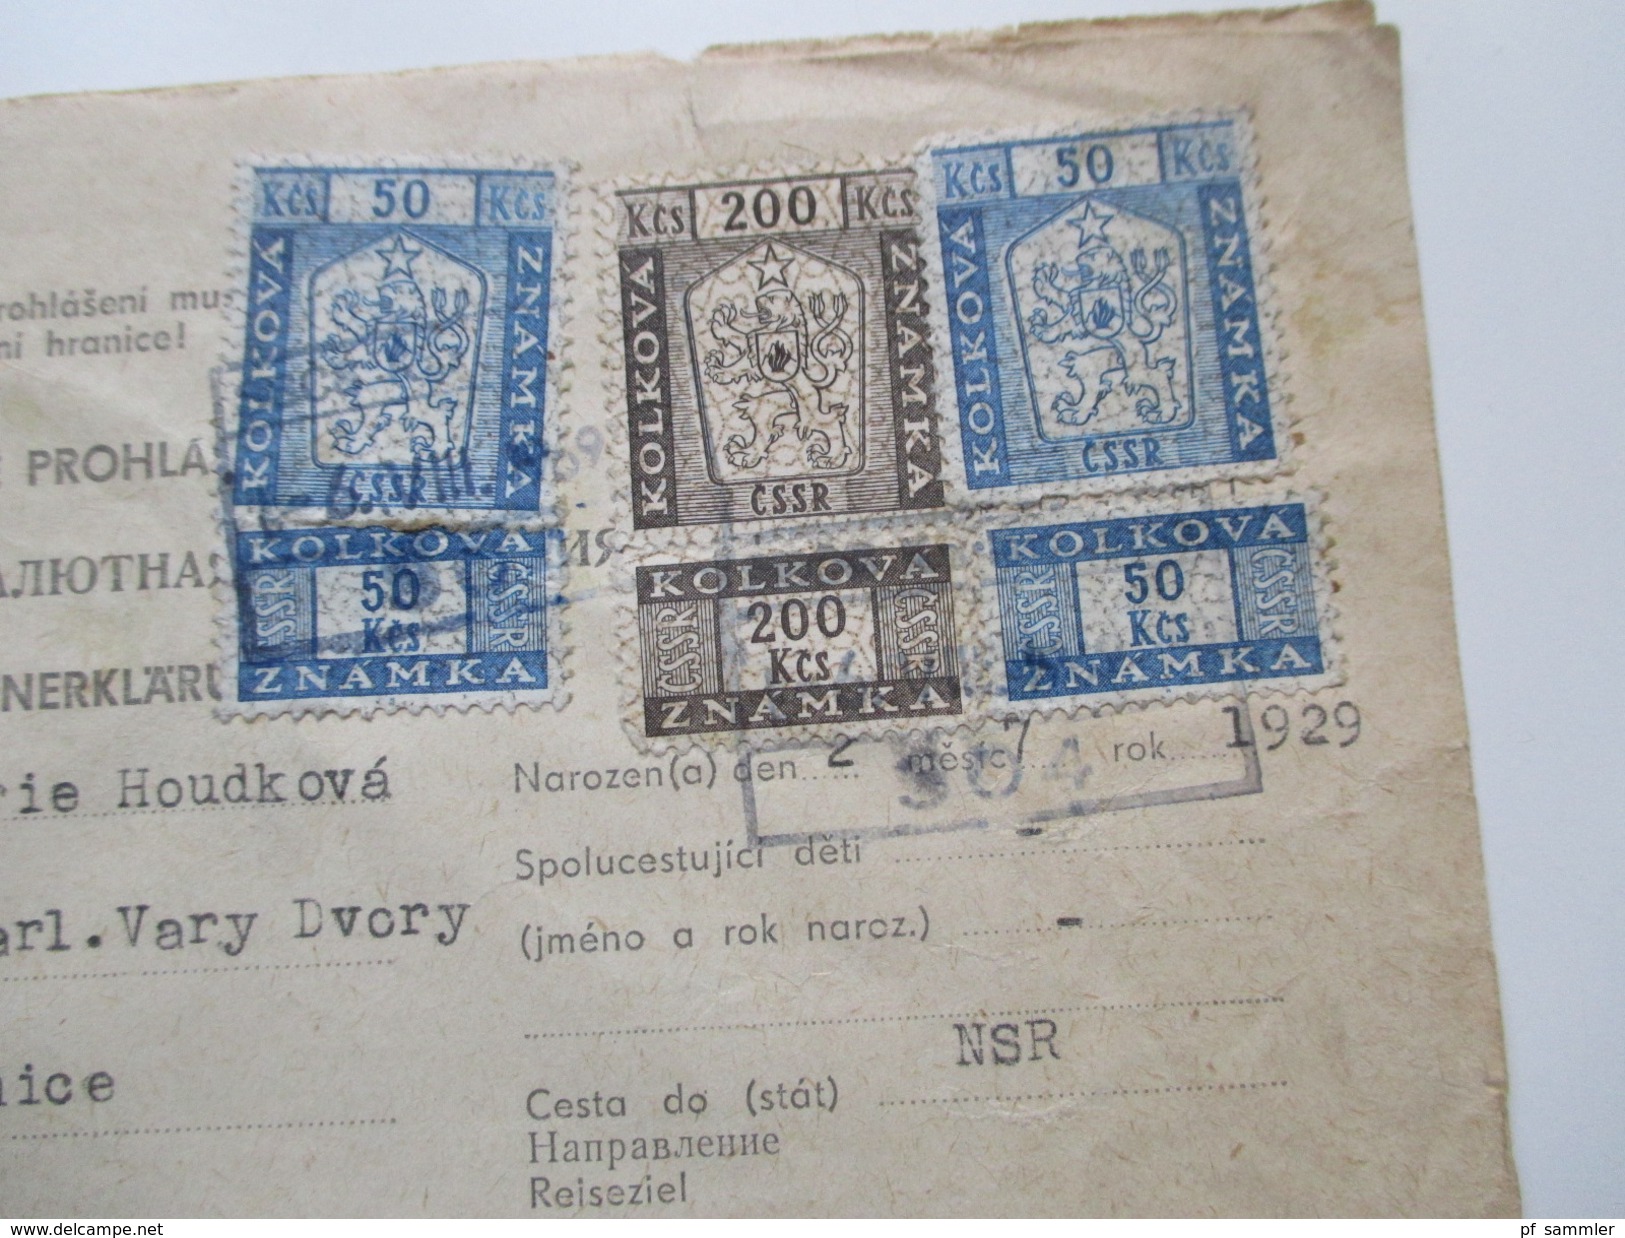 Tschechoslowakei 1951 Zoll und Devisenerklärung 3 Stück mit Fiskalmarken / Stempelmarken! Interessant??!!